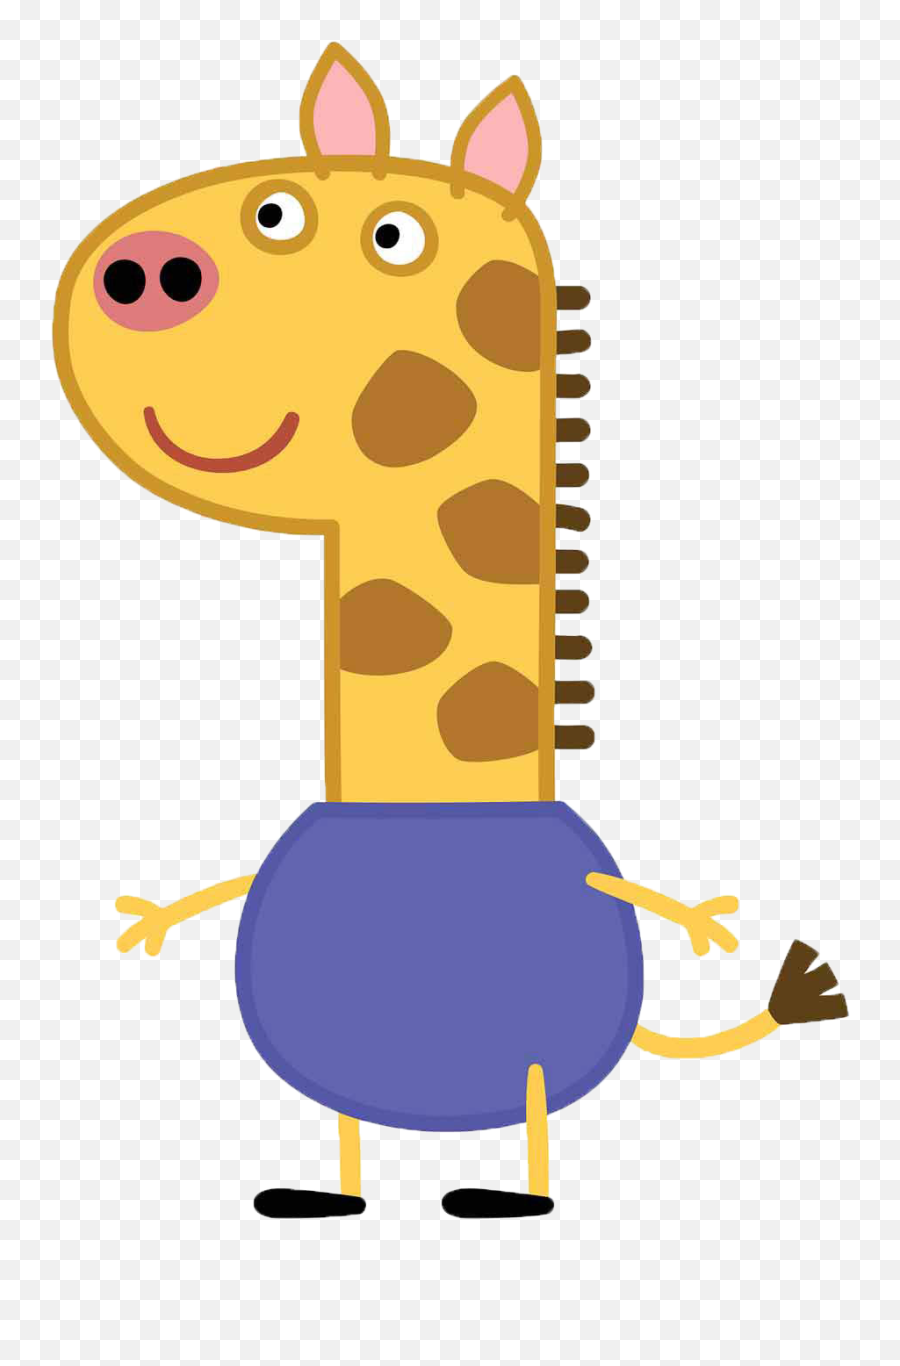 Gerald Giraffe Official Peppa Pig Wiki Fandom - Gerald Giraffe Peppa Pig Png,Giraffe Transparent Background